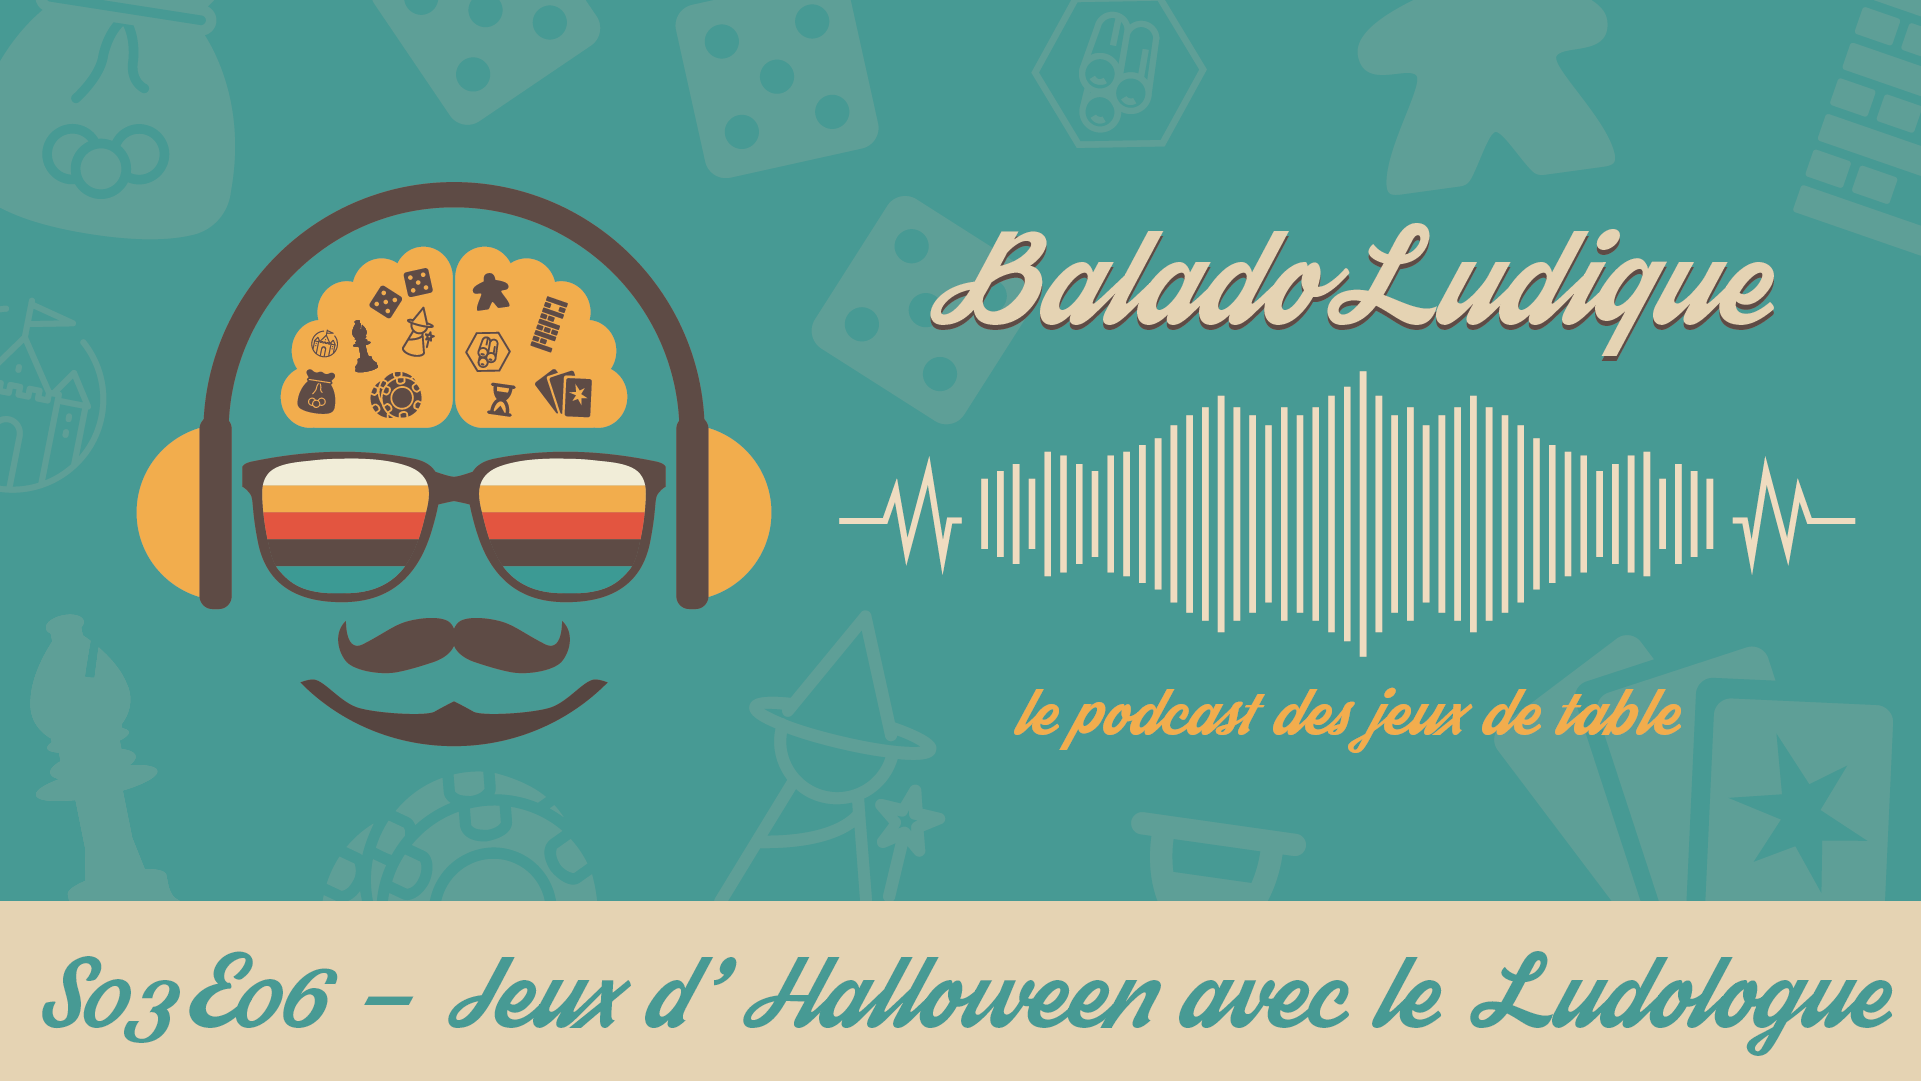 Jeux d'Halloween - BaladoLudique - s03-e06